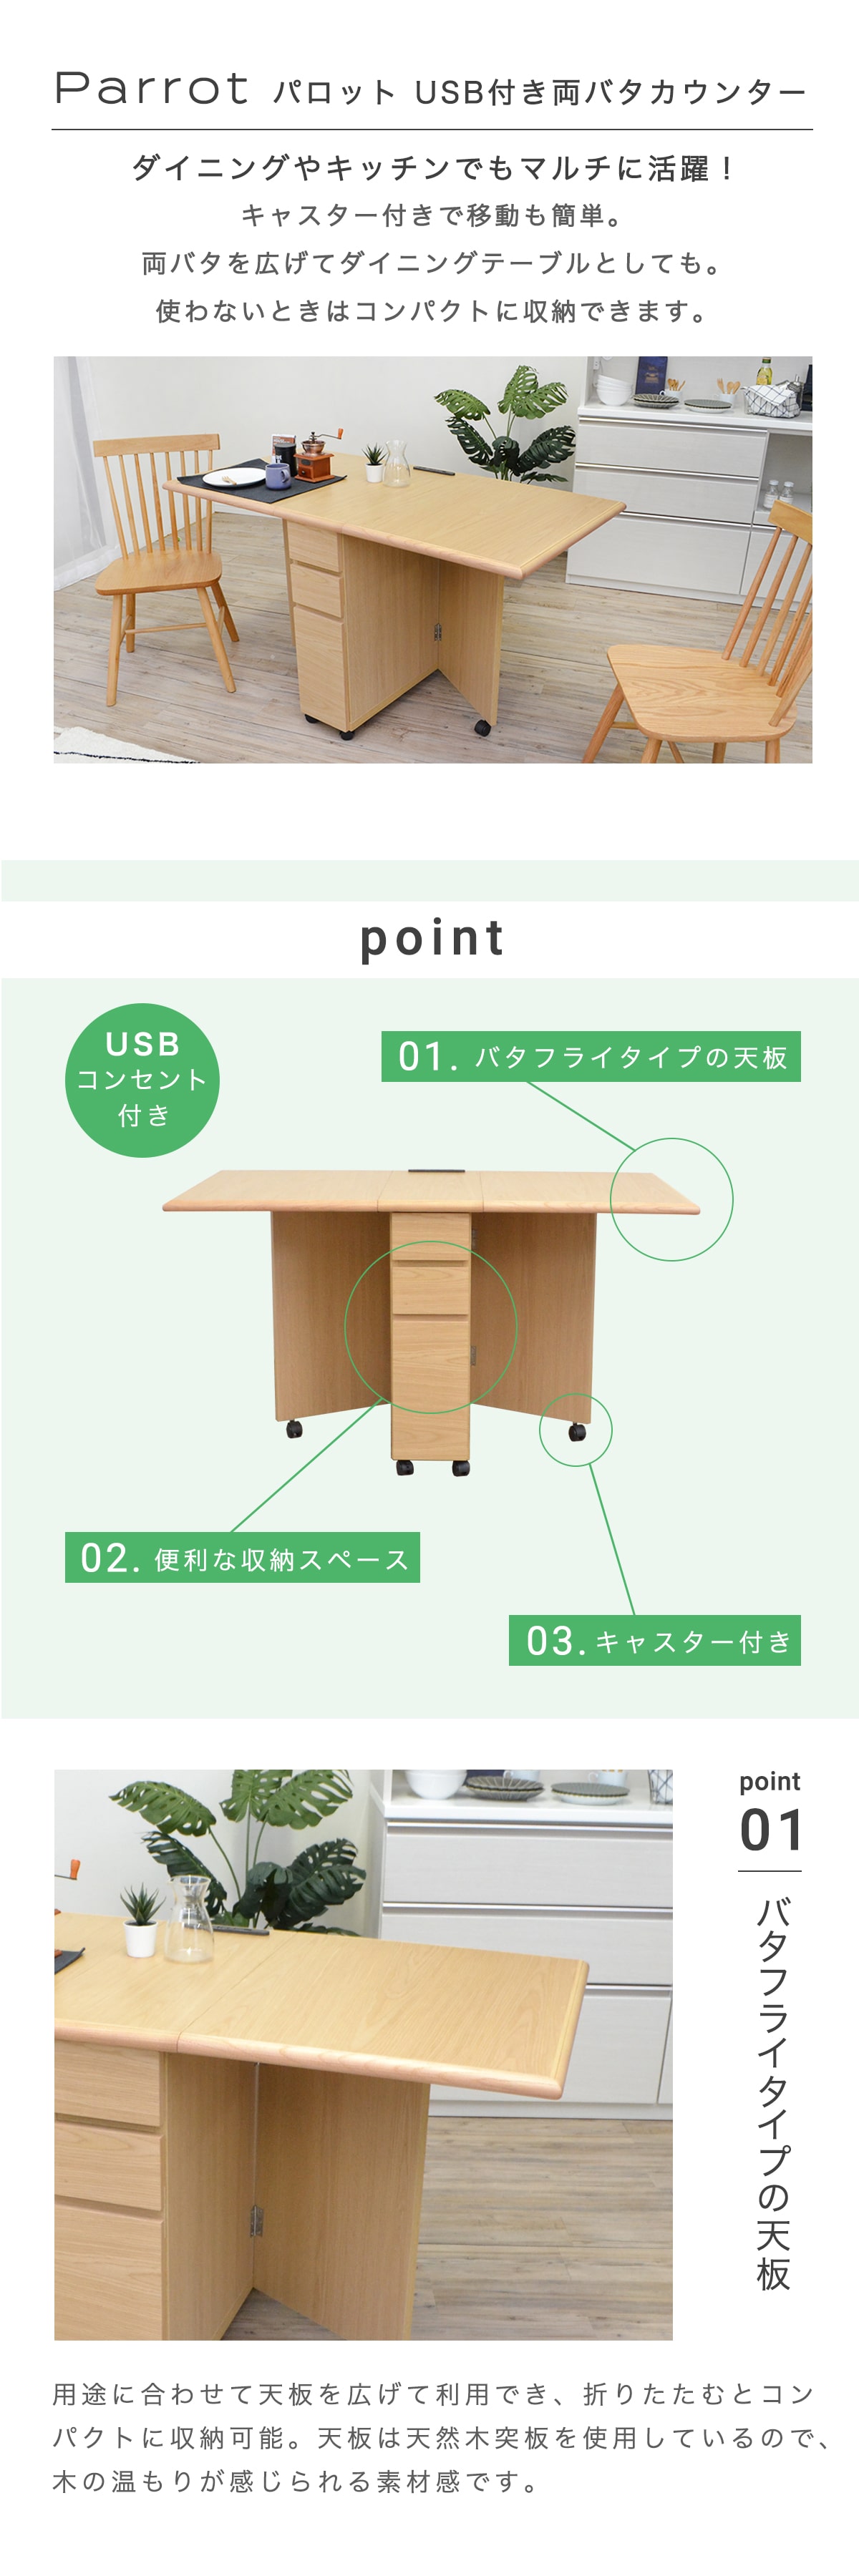 両バタフライ テーブル キッチンカウンター 収納 USB 木製 天然木